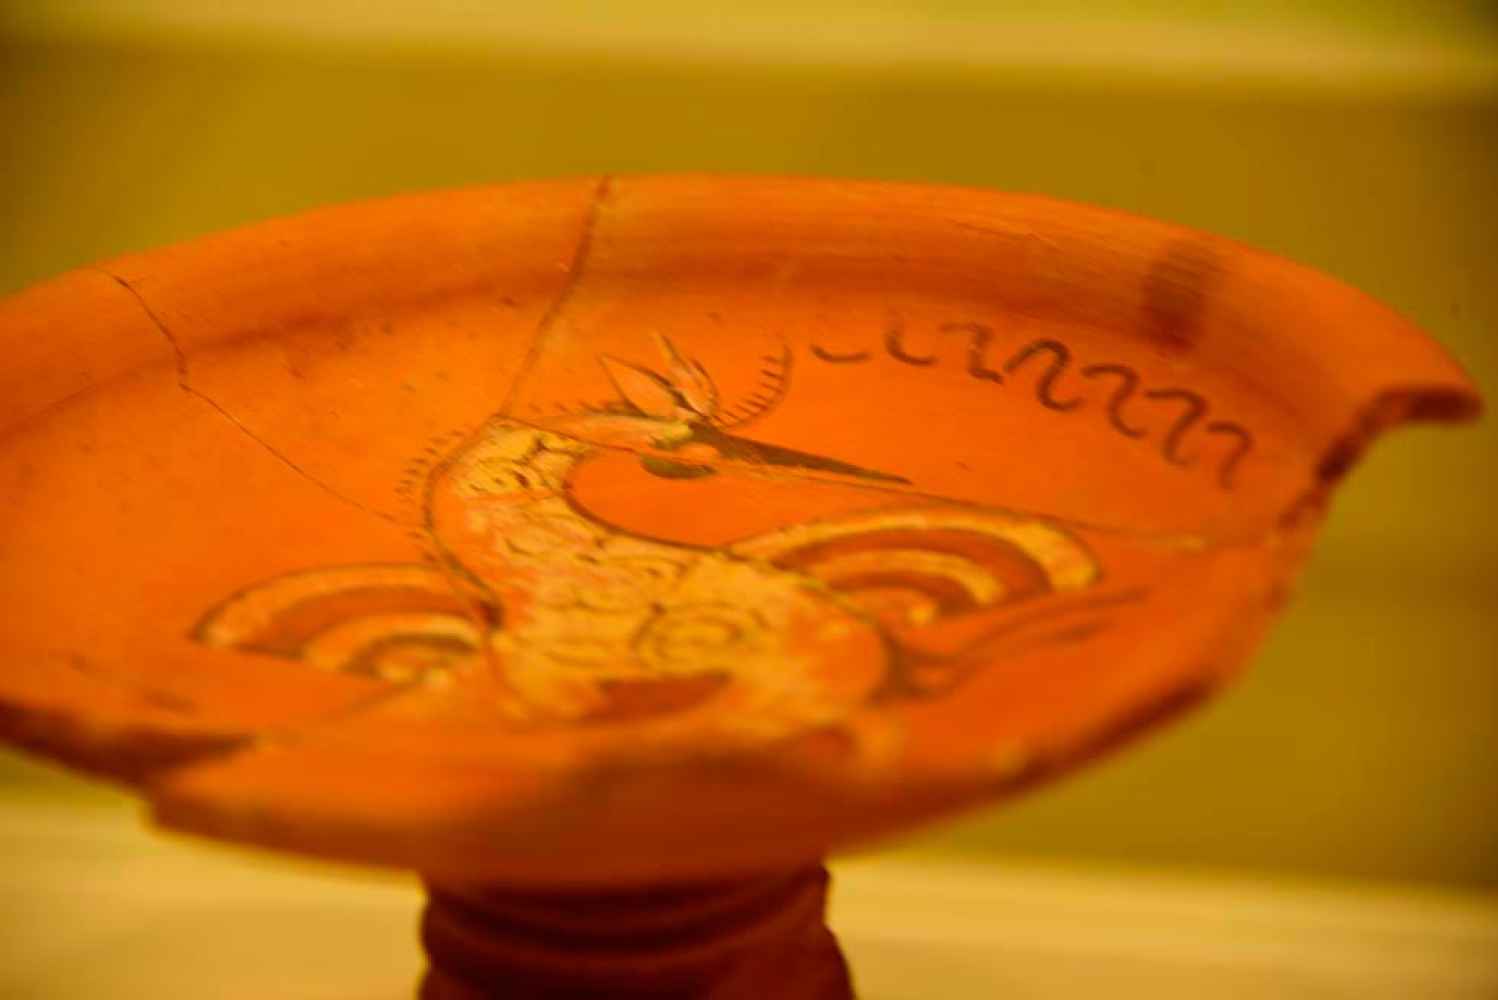 Fragmentos de agua y cielo en cerámicas de Numancia - fotos